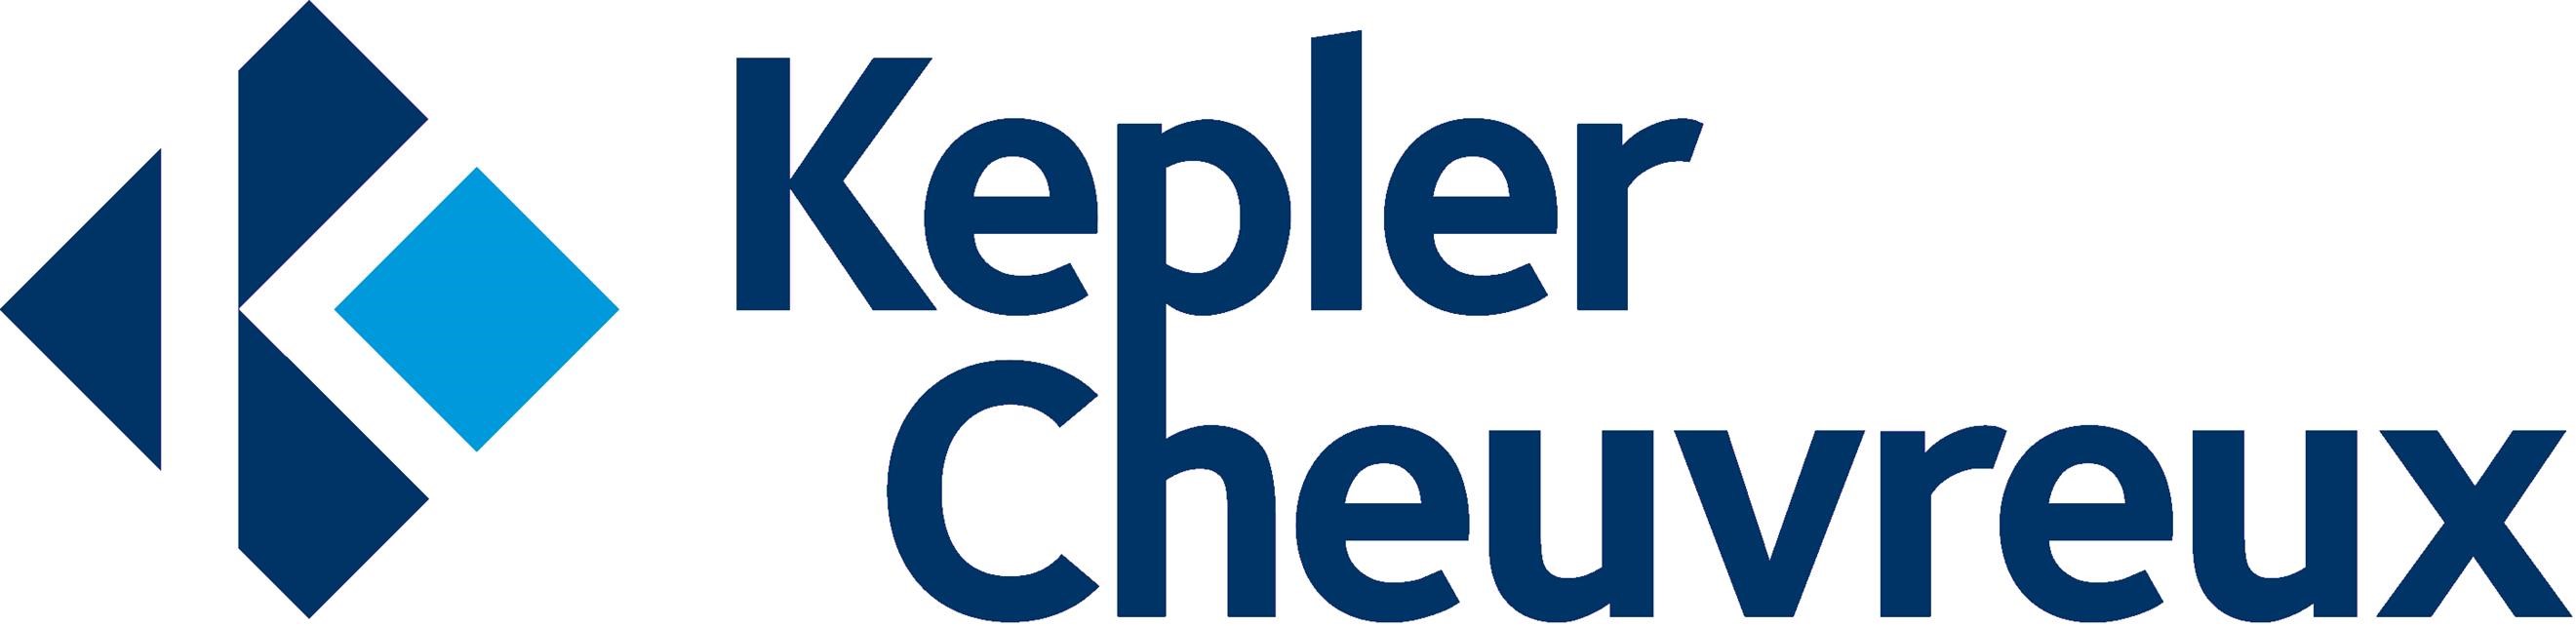 Kepler_Cheuvreux_logo.jpg